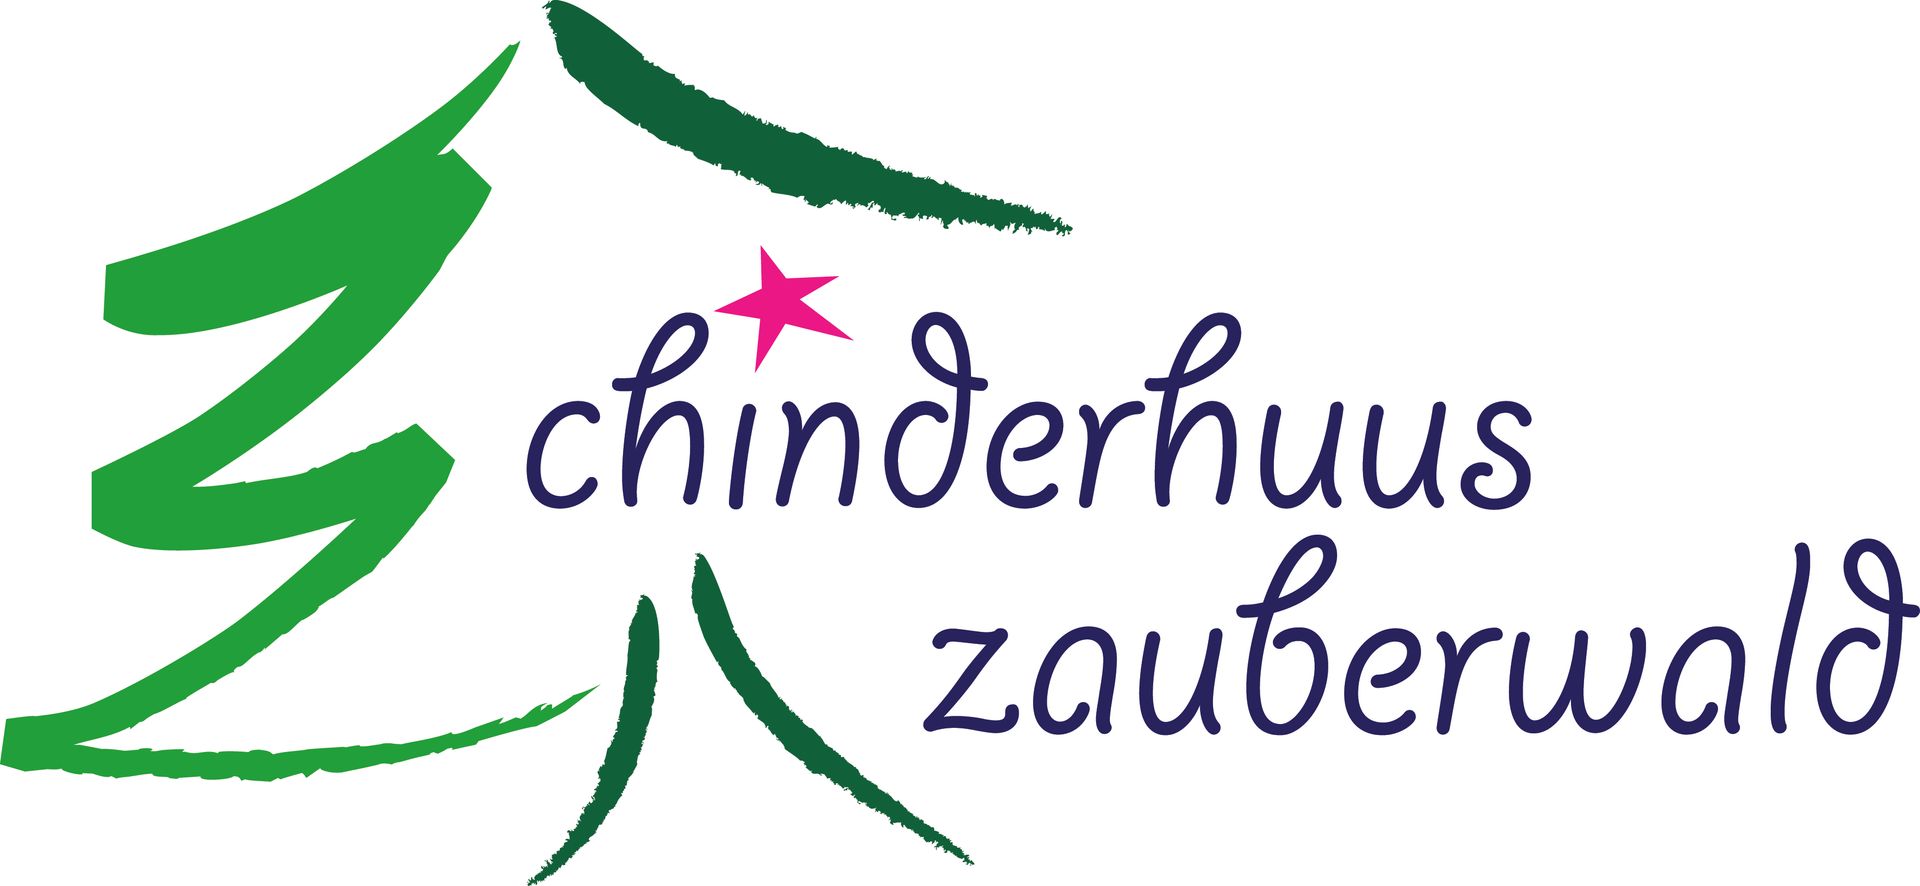 Chinderhuus-Zauberwald-GmbH-logo